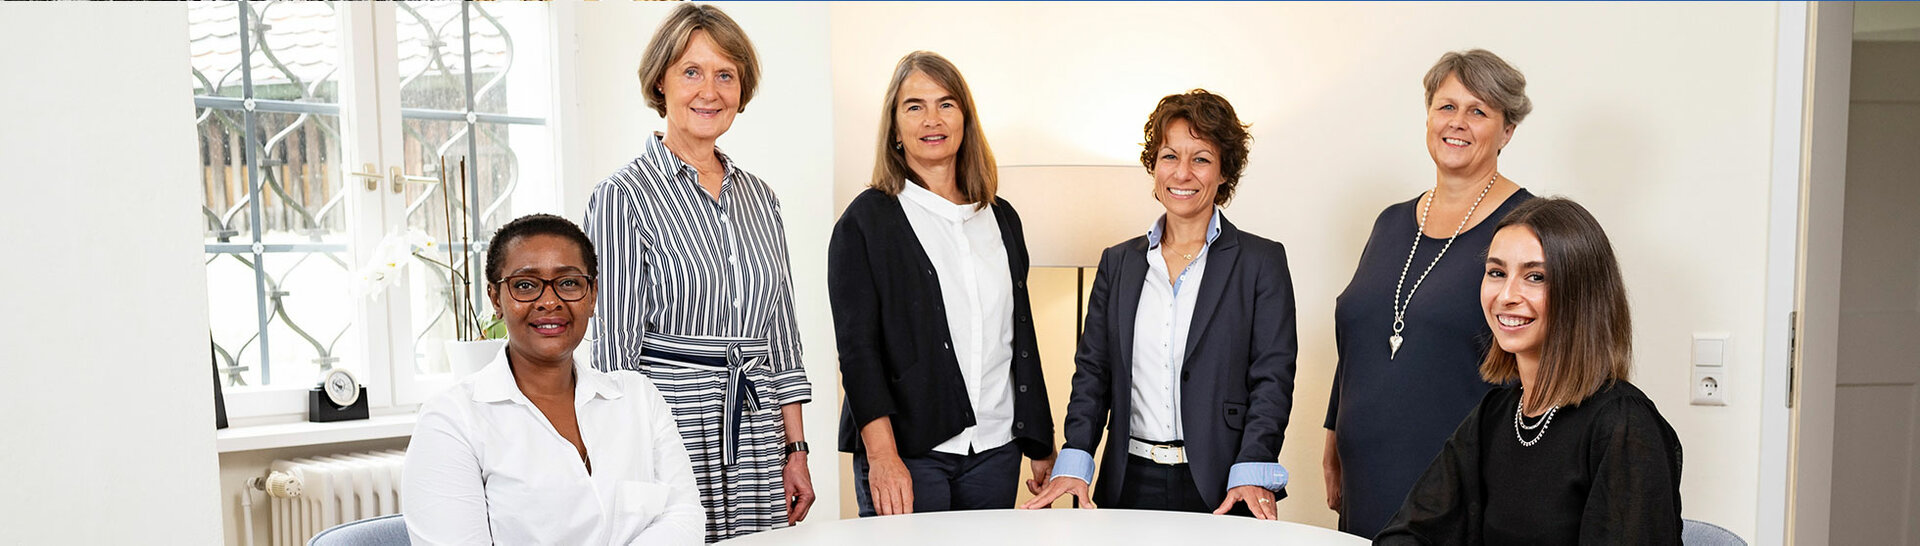 Header: Foto der sechs Frauen unseres Teams Aufnahme 